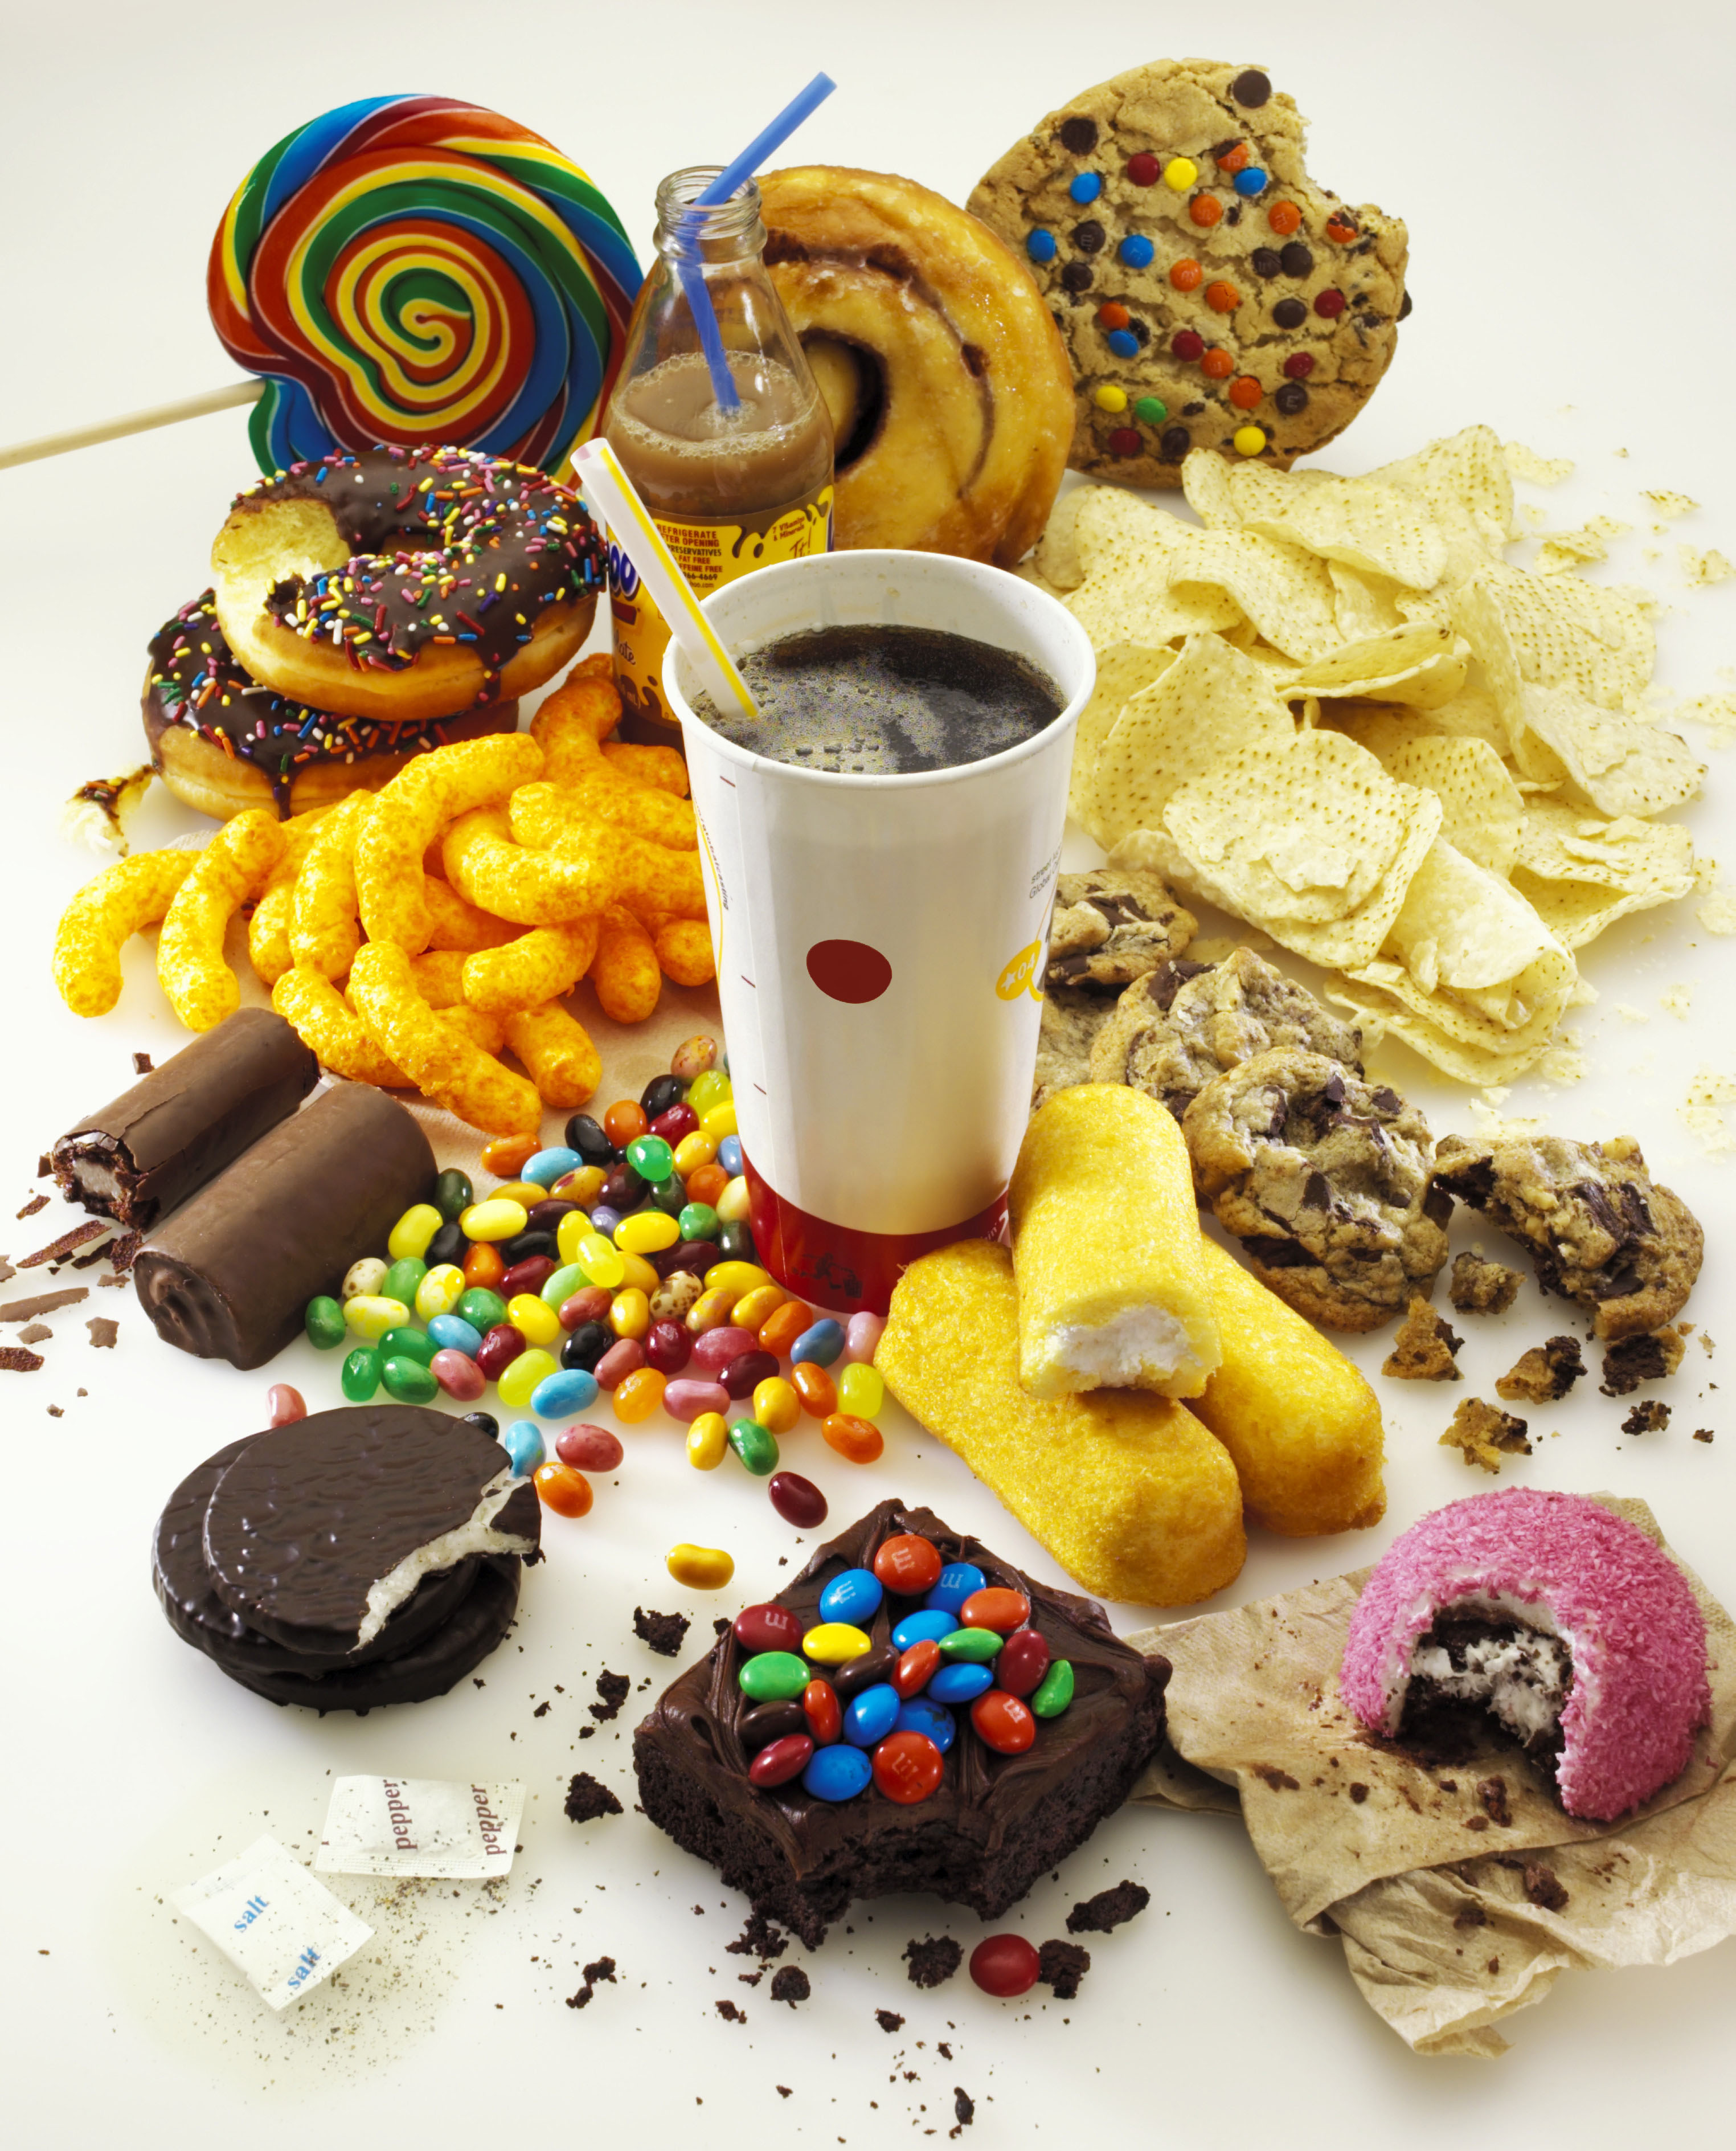 junk food causes diseases in summer